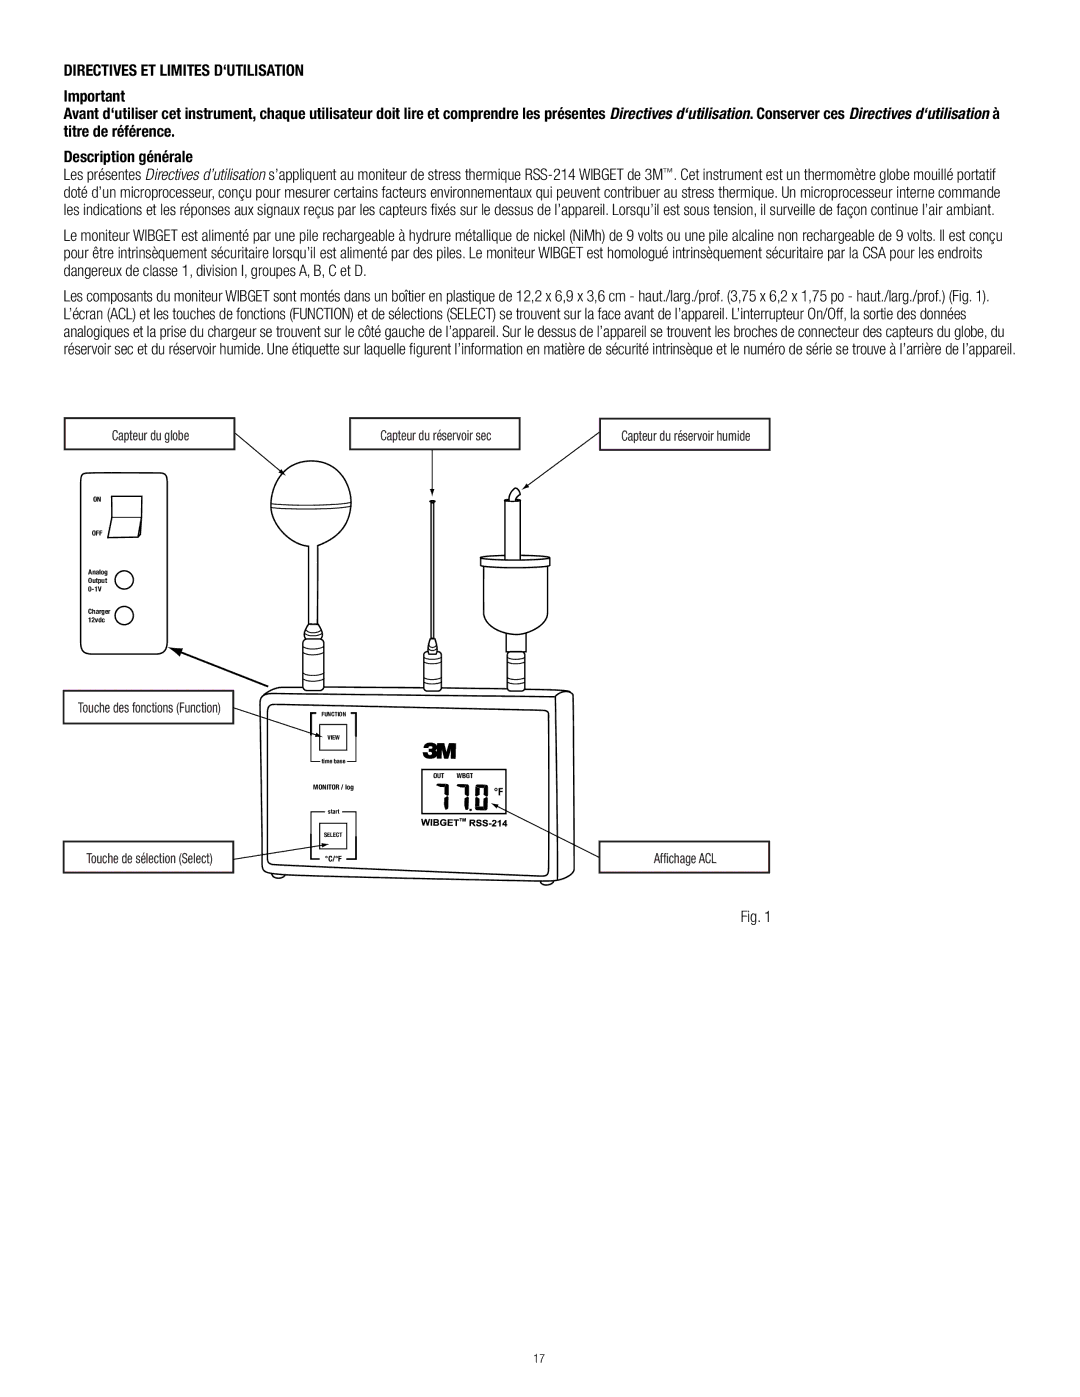 3M RSS-214 manual Directives ET Limites D‘UTILISATION, Capteur du réservoir humide 